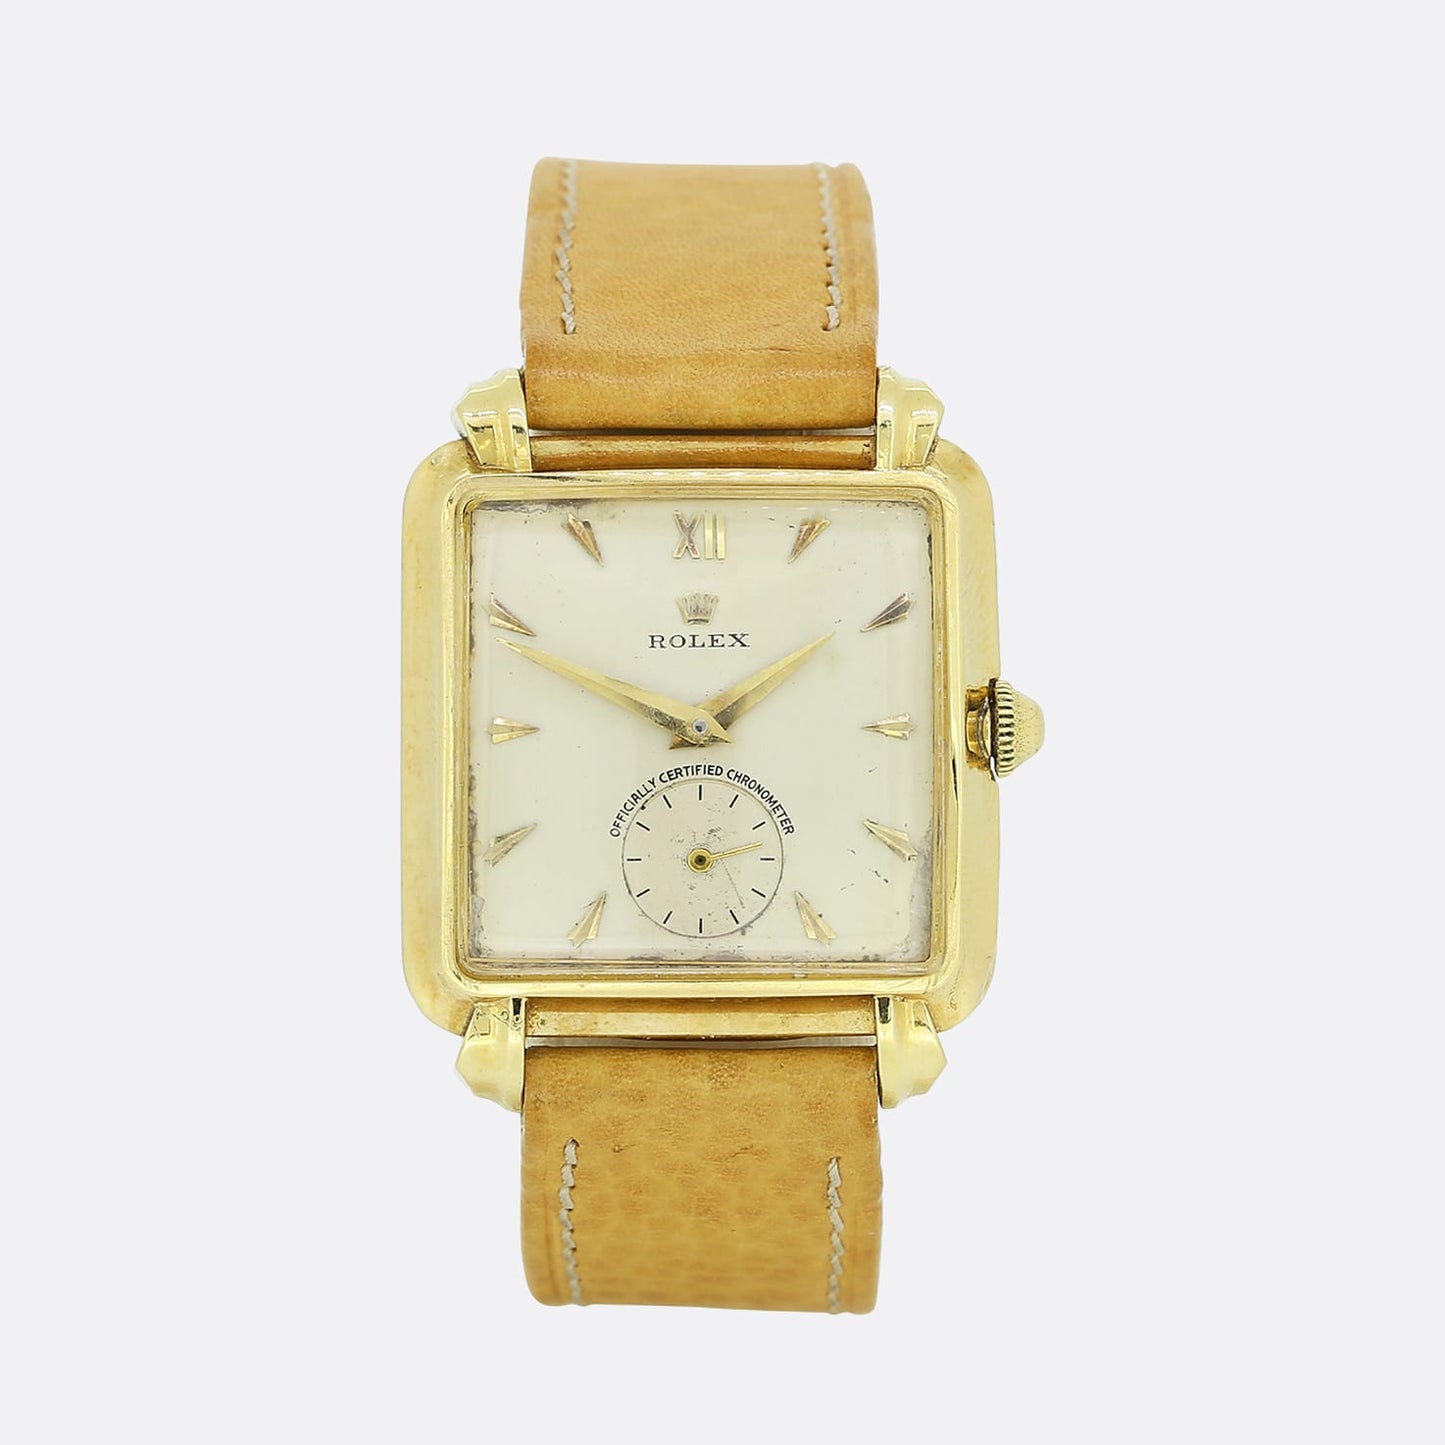 Vintage 1930's Manual Rolex Wristwatch